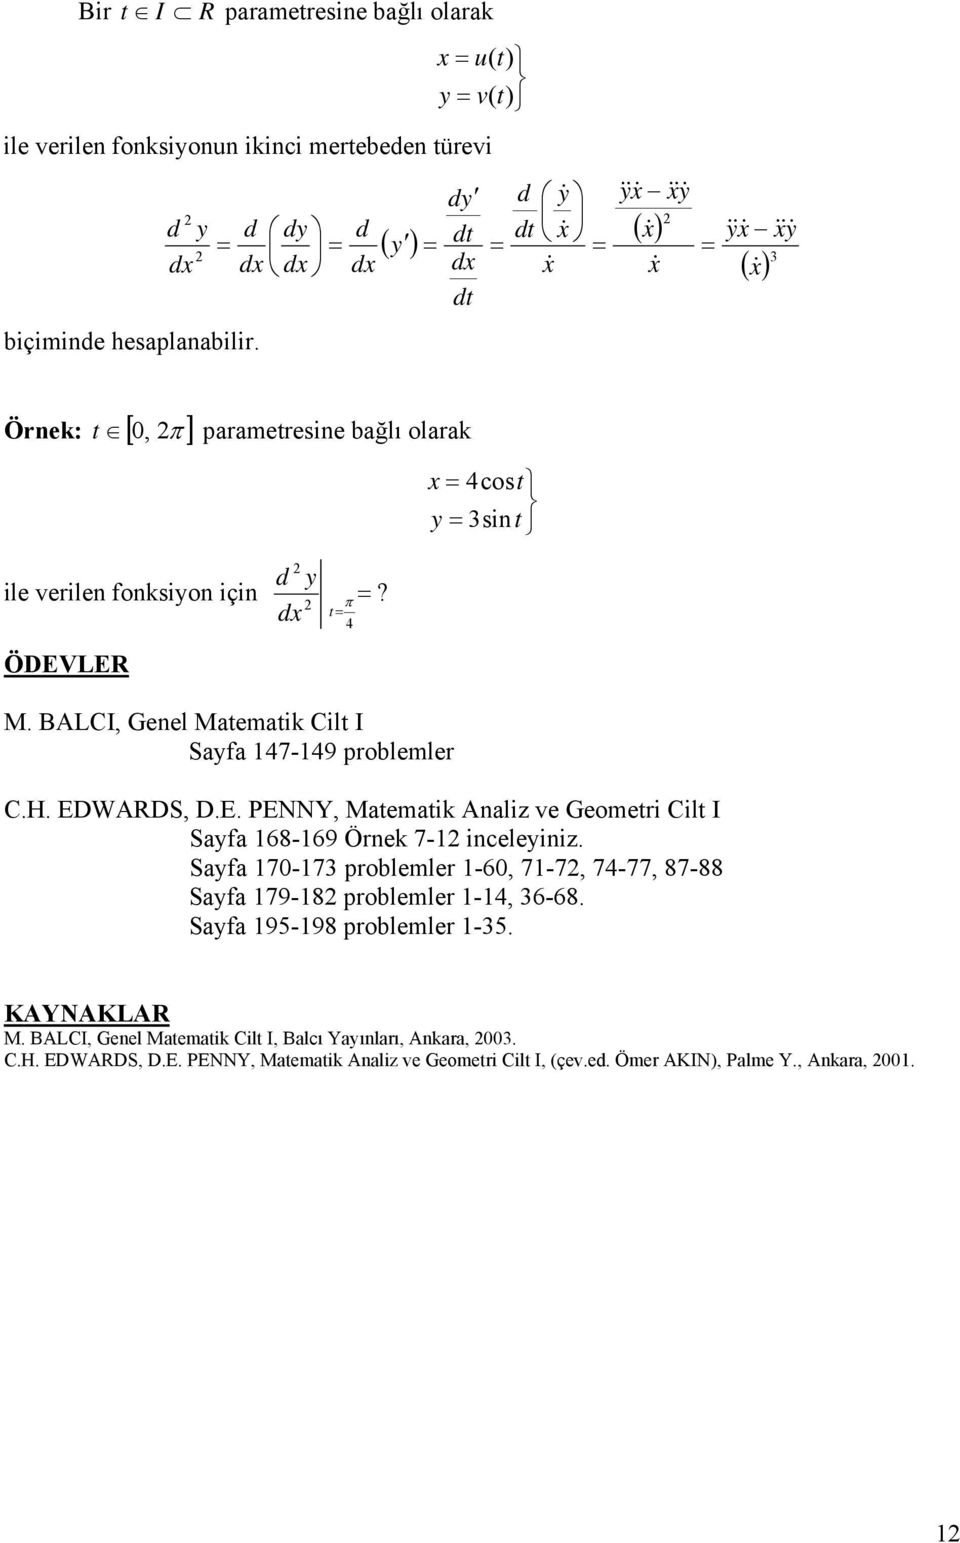 H. EDWARDS D.E. PENNY Matematik Analiz ve Geometri Cilt I Sayfa 68-69 Örnek 7- inceleyiniz. Sayfa 70-73 problemler -60 7-7 74-77 87-88 Sayfa 79-8 problemler -4 36-68.